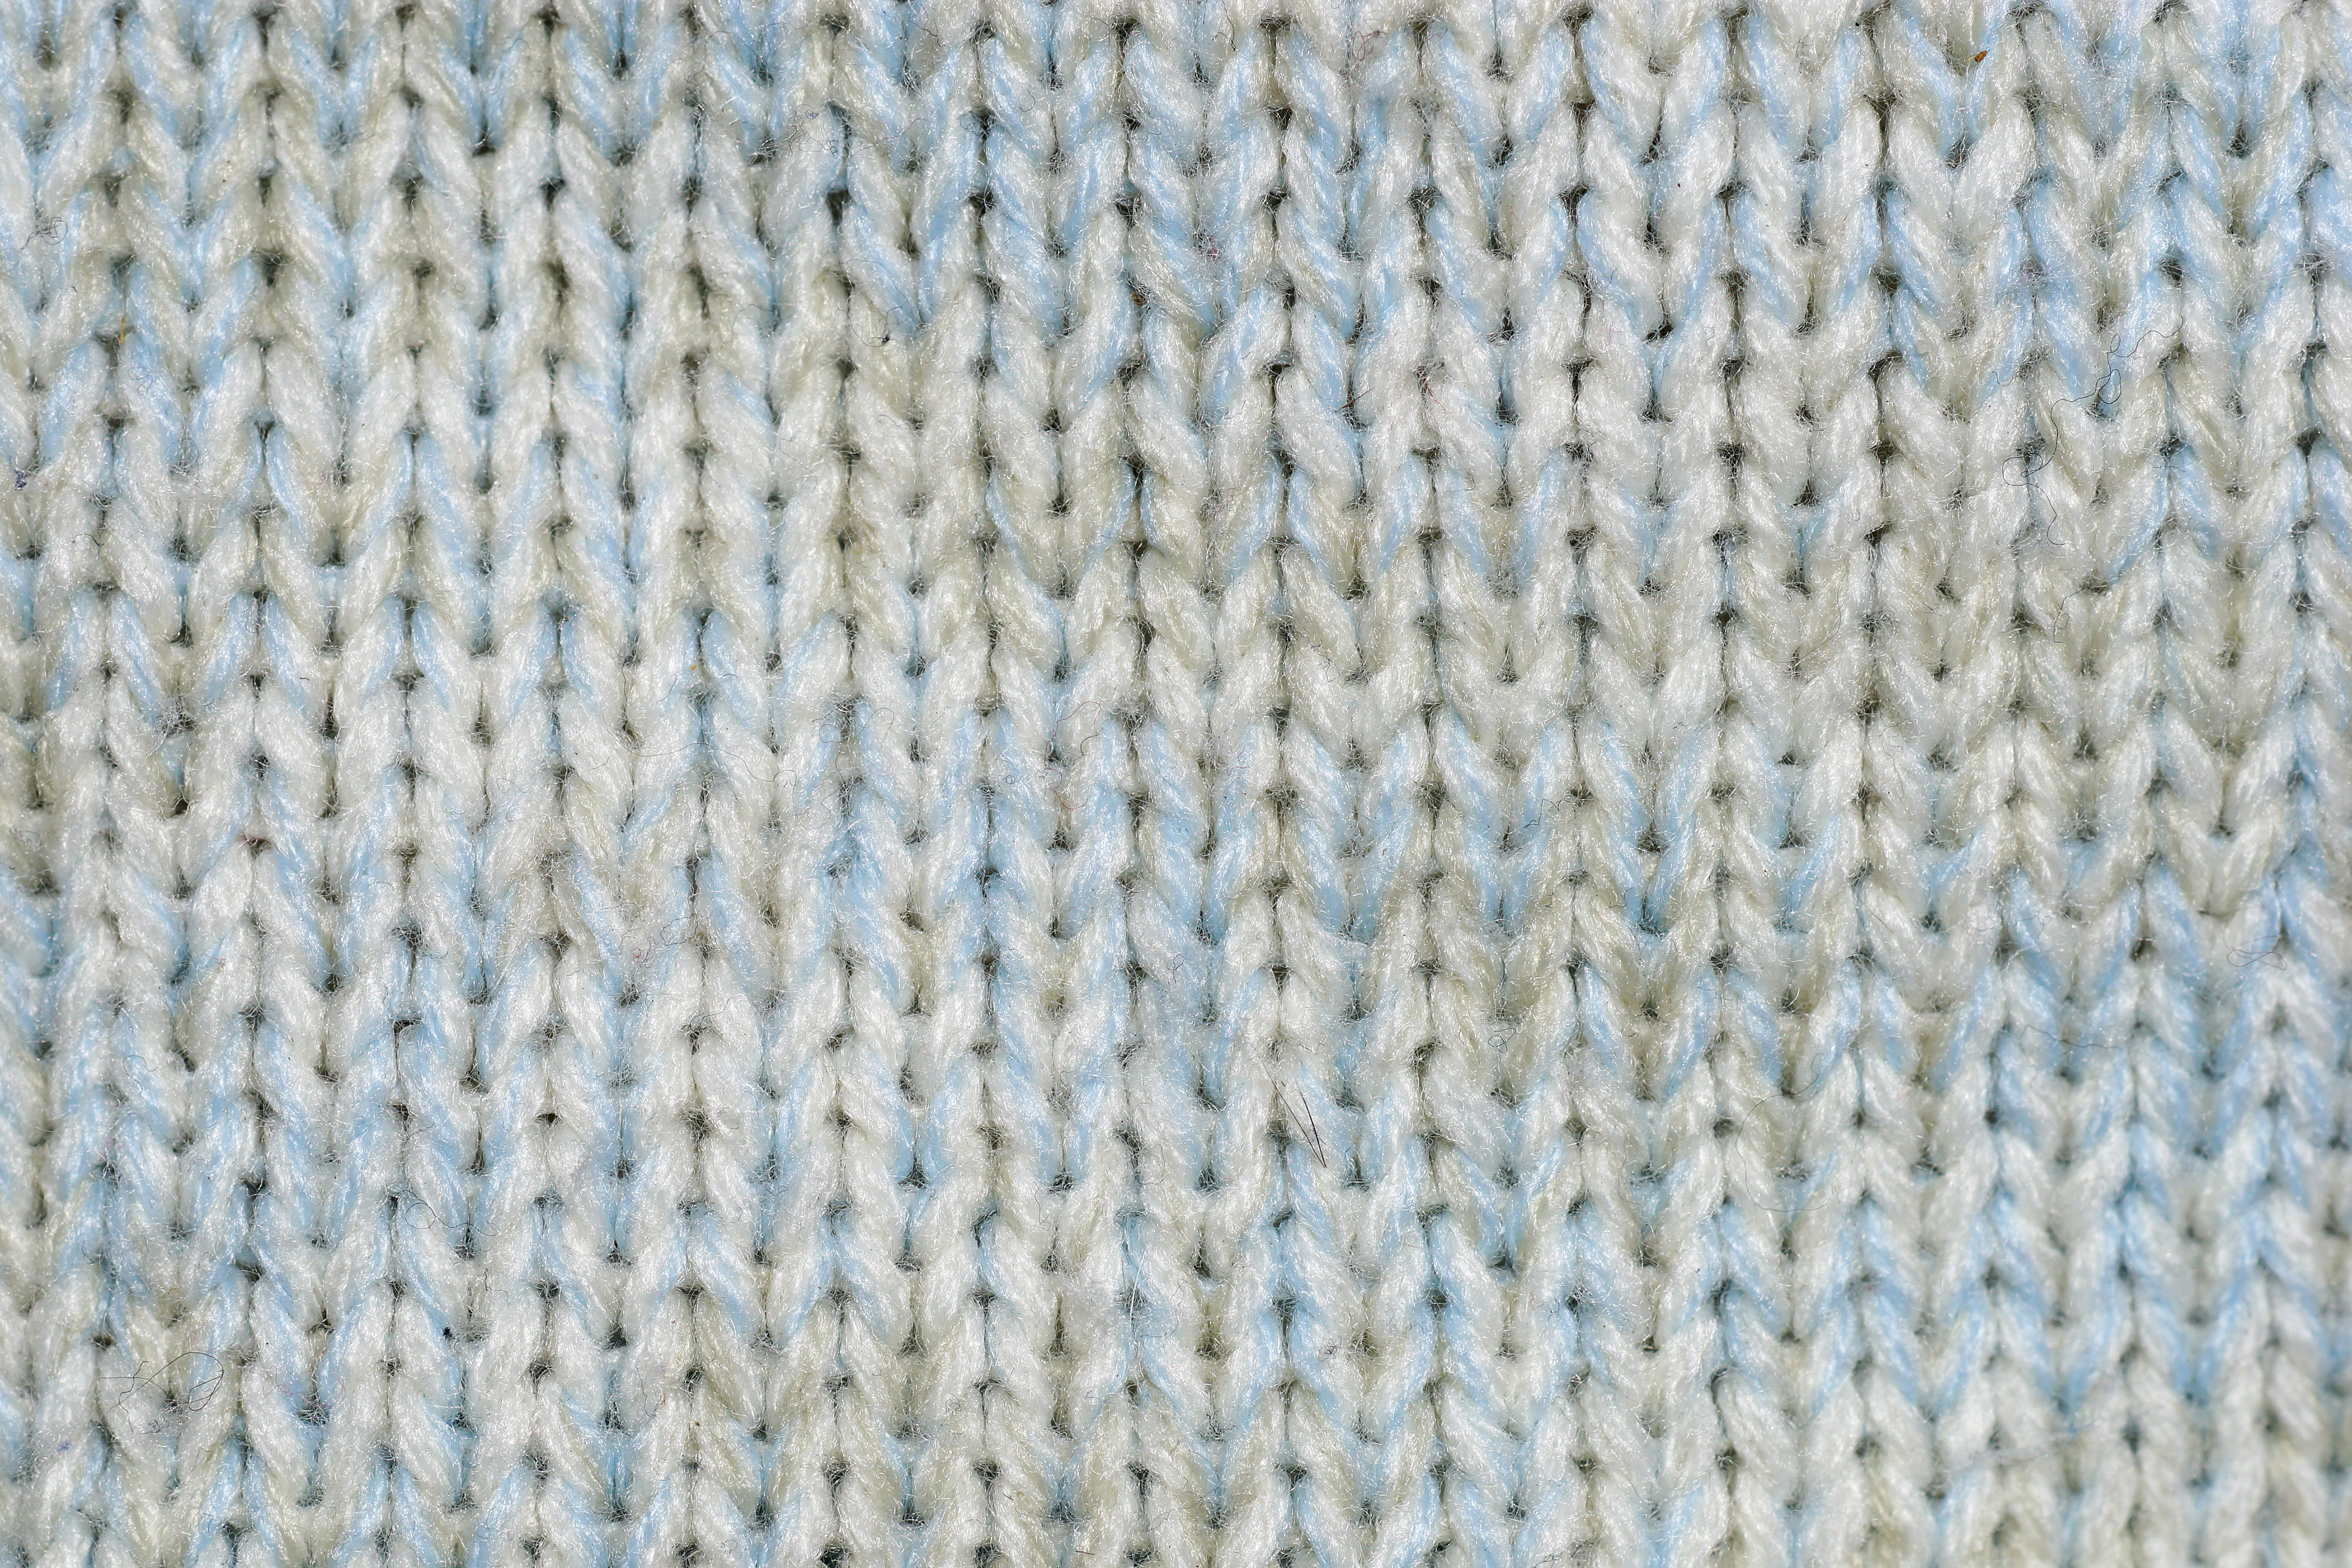 https://www.myfreetextures.com/wp-content/uploads/2014/11/wool-texture-knit-fabric.jpg